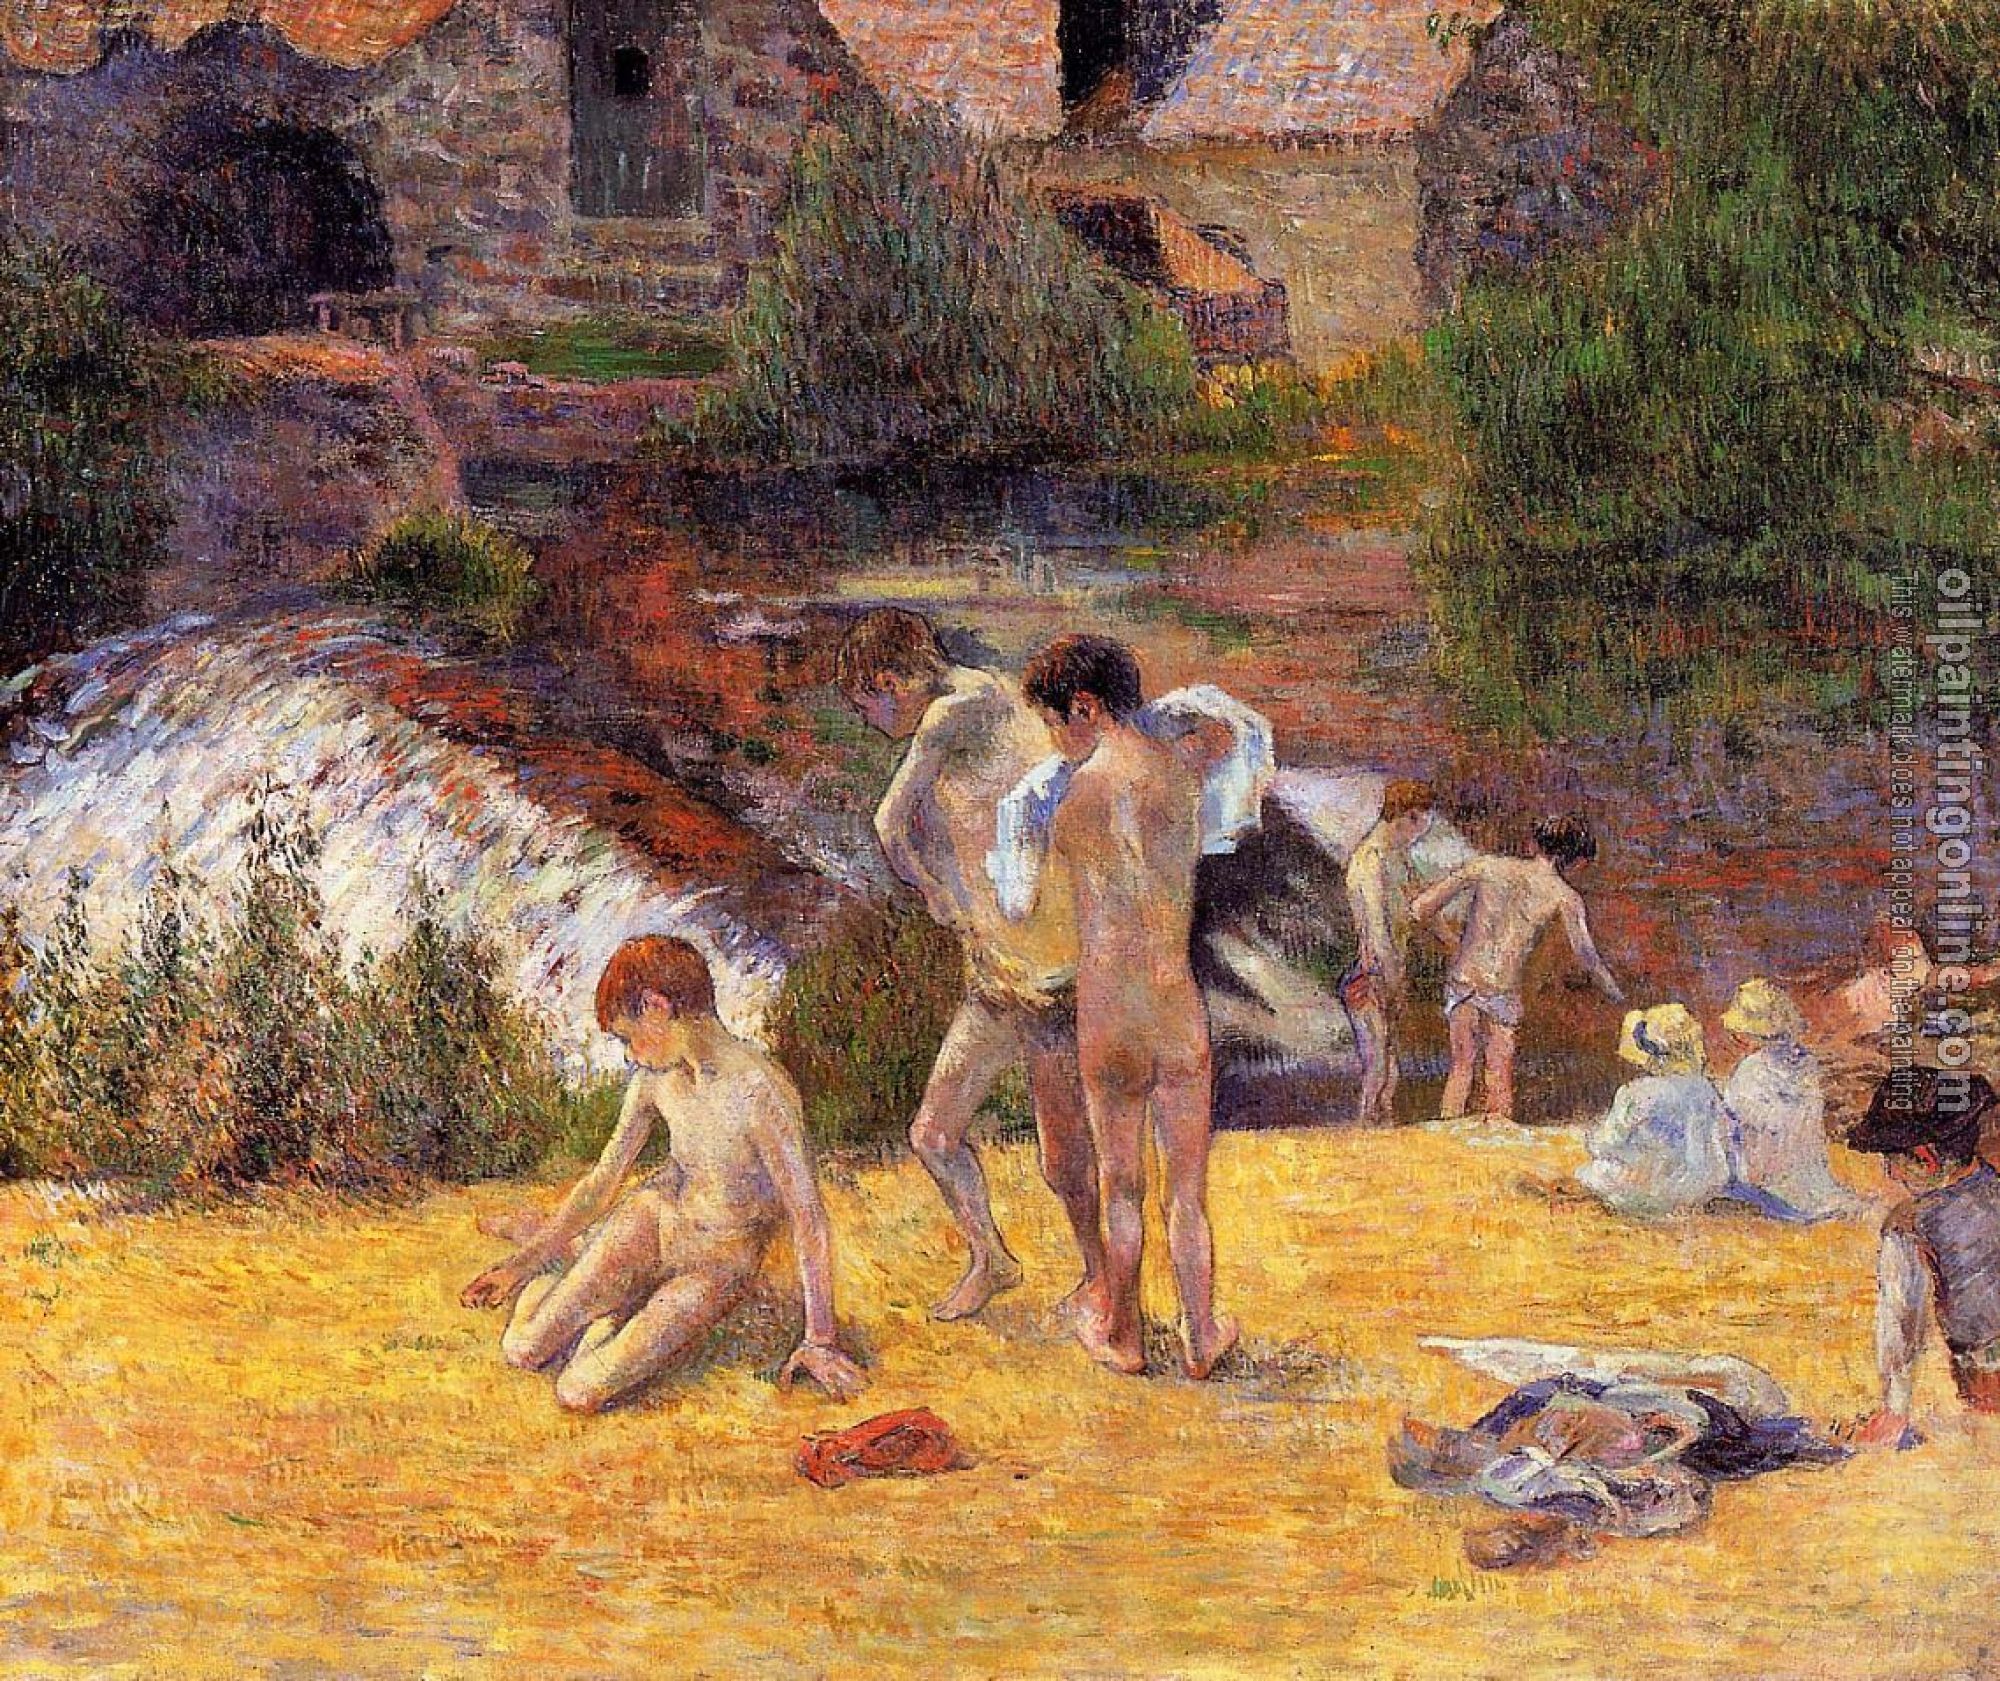 Gauguin, Paul - The Moulin du Boid d'Amour Bathing Place